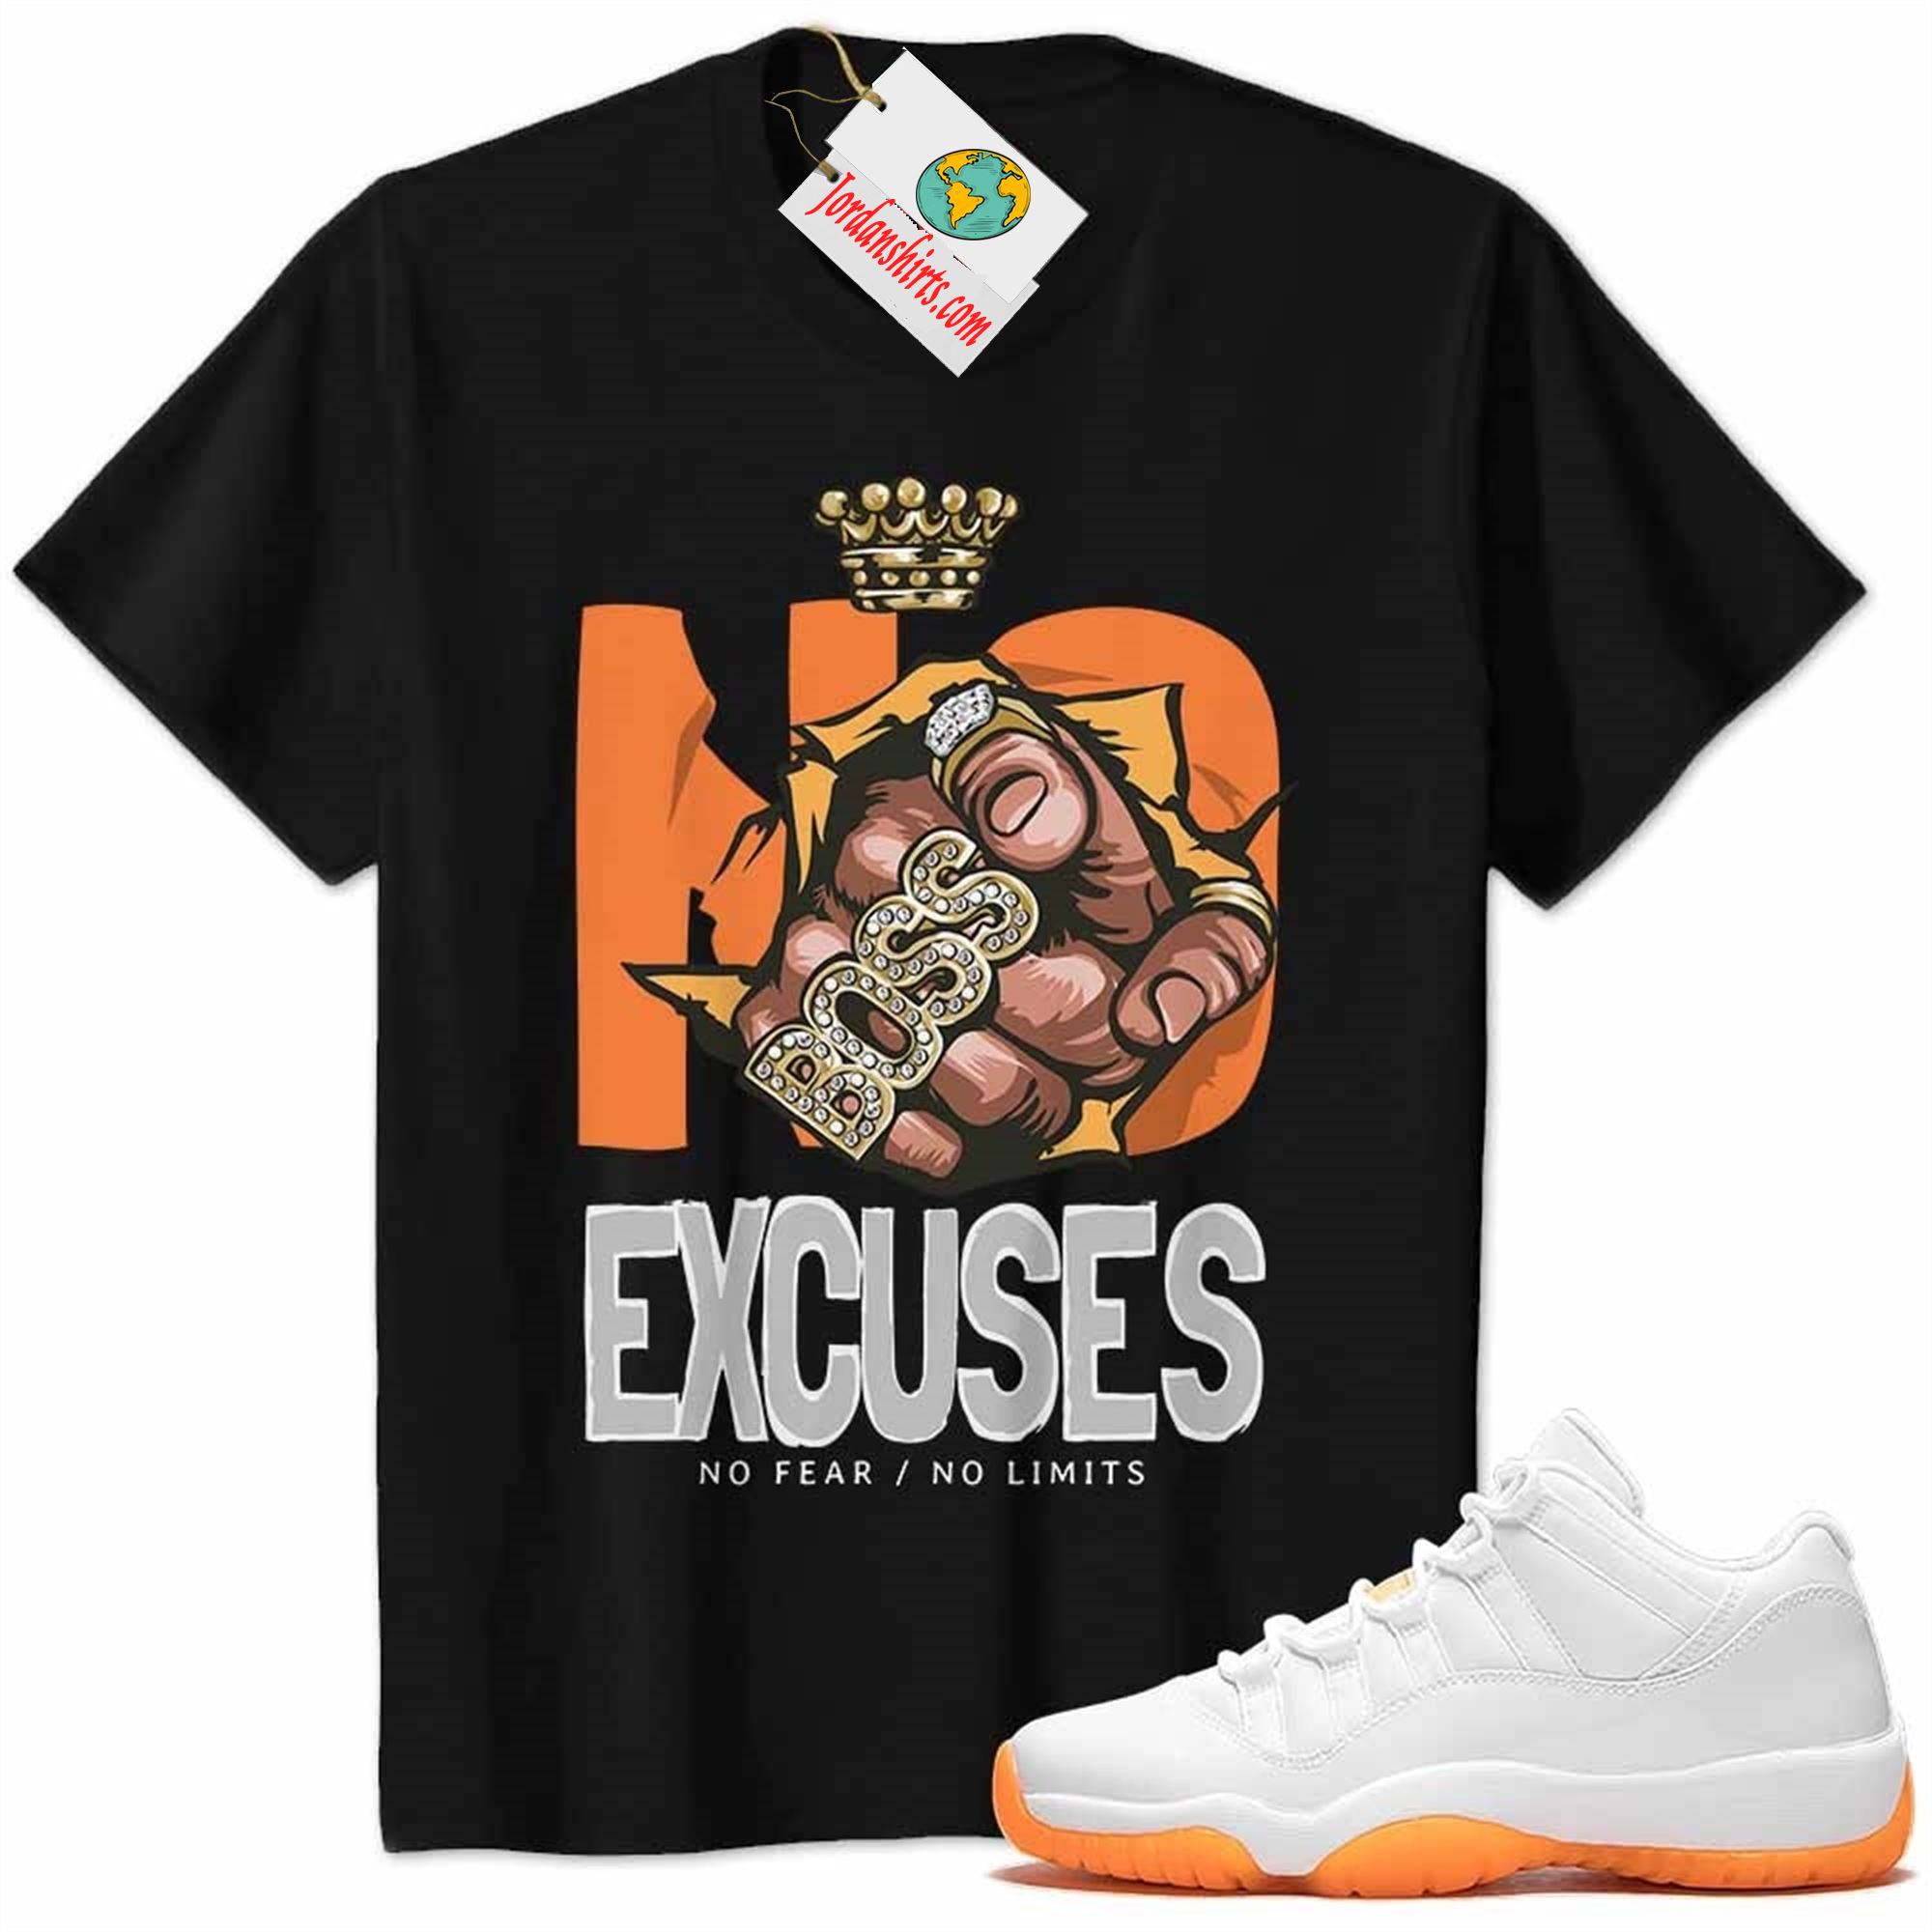 Jordan 11 Shirt, No Excuses No Fear No Limits Boss Hand Black Air Jordan 11 Citrus 11s Full Size Up To 5xl